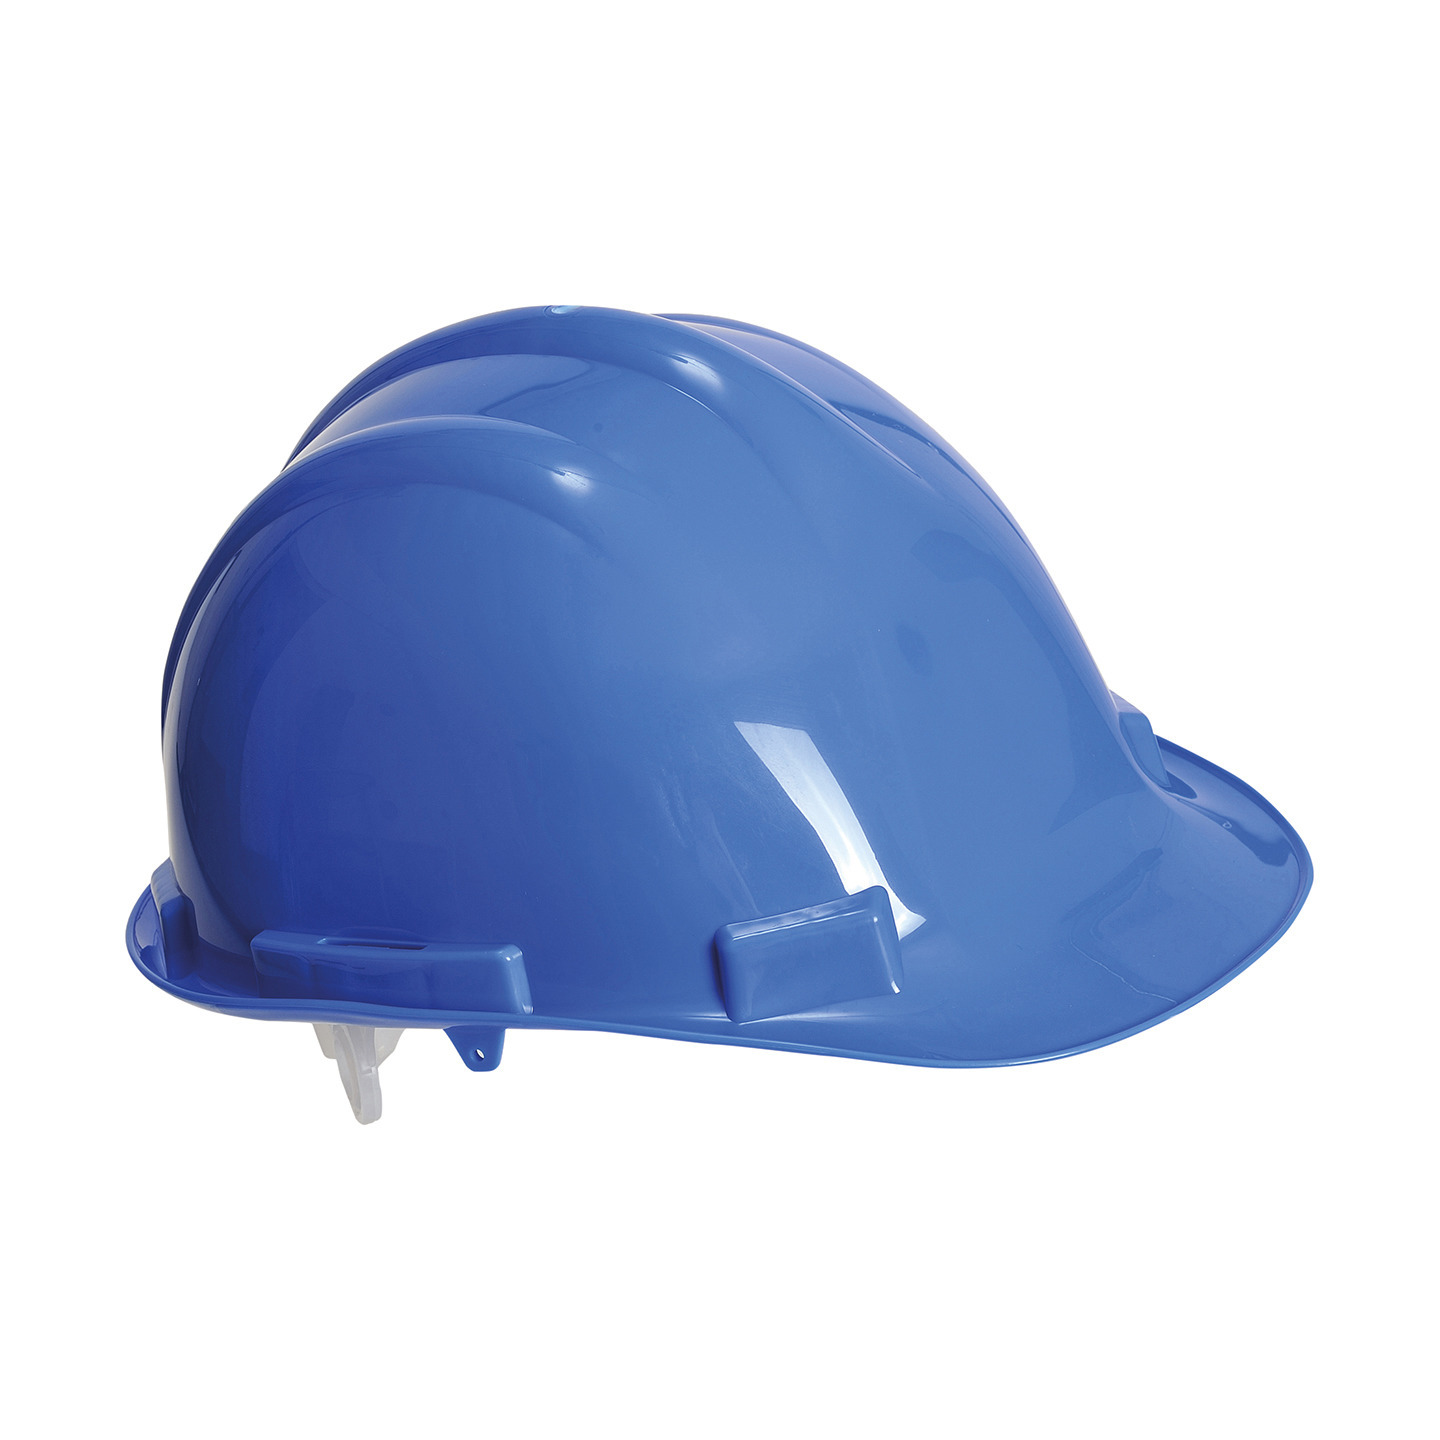 Set van 2x stuks veiligheidshelmen-bouwhelmen hoofdbescherming blauw verstelbaar 55-62 cm